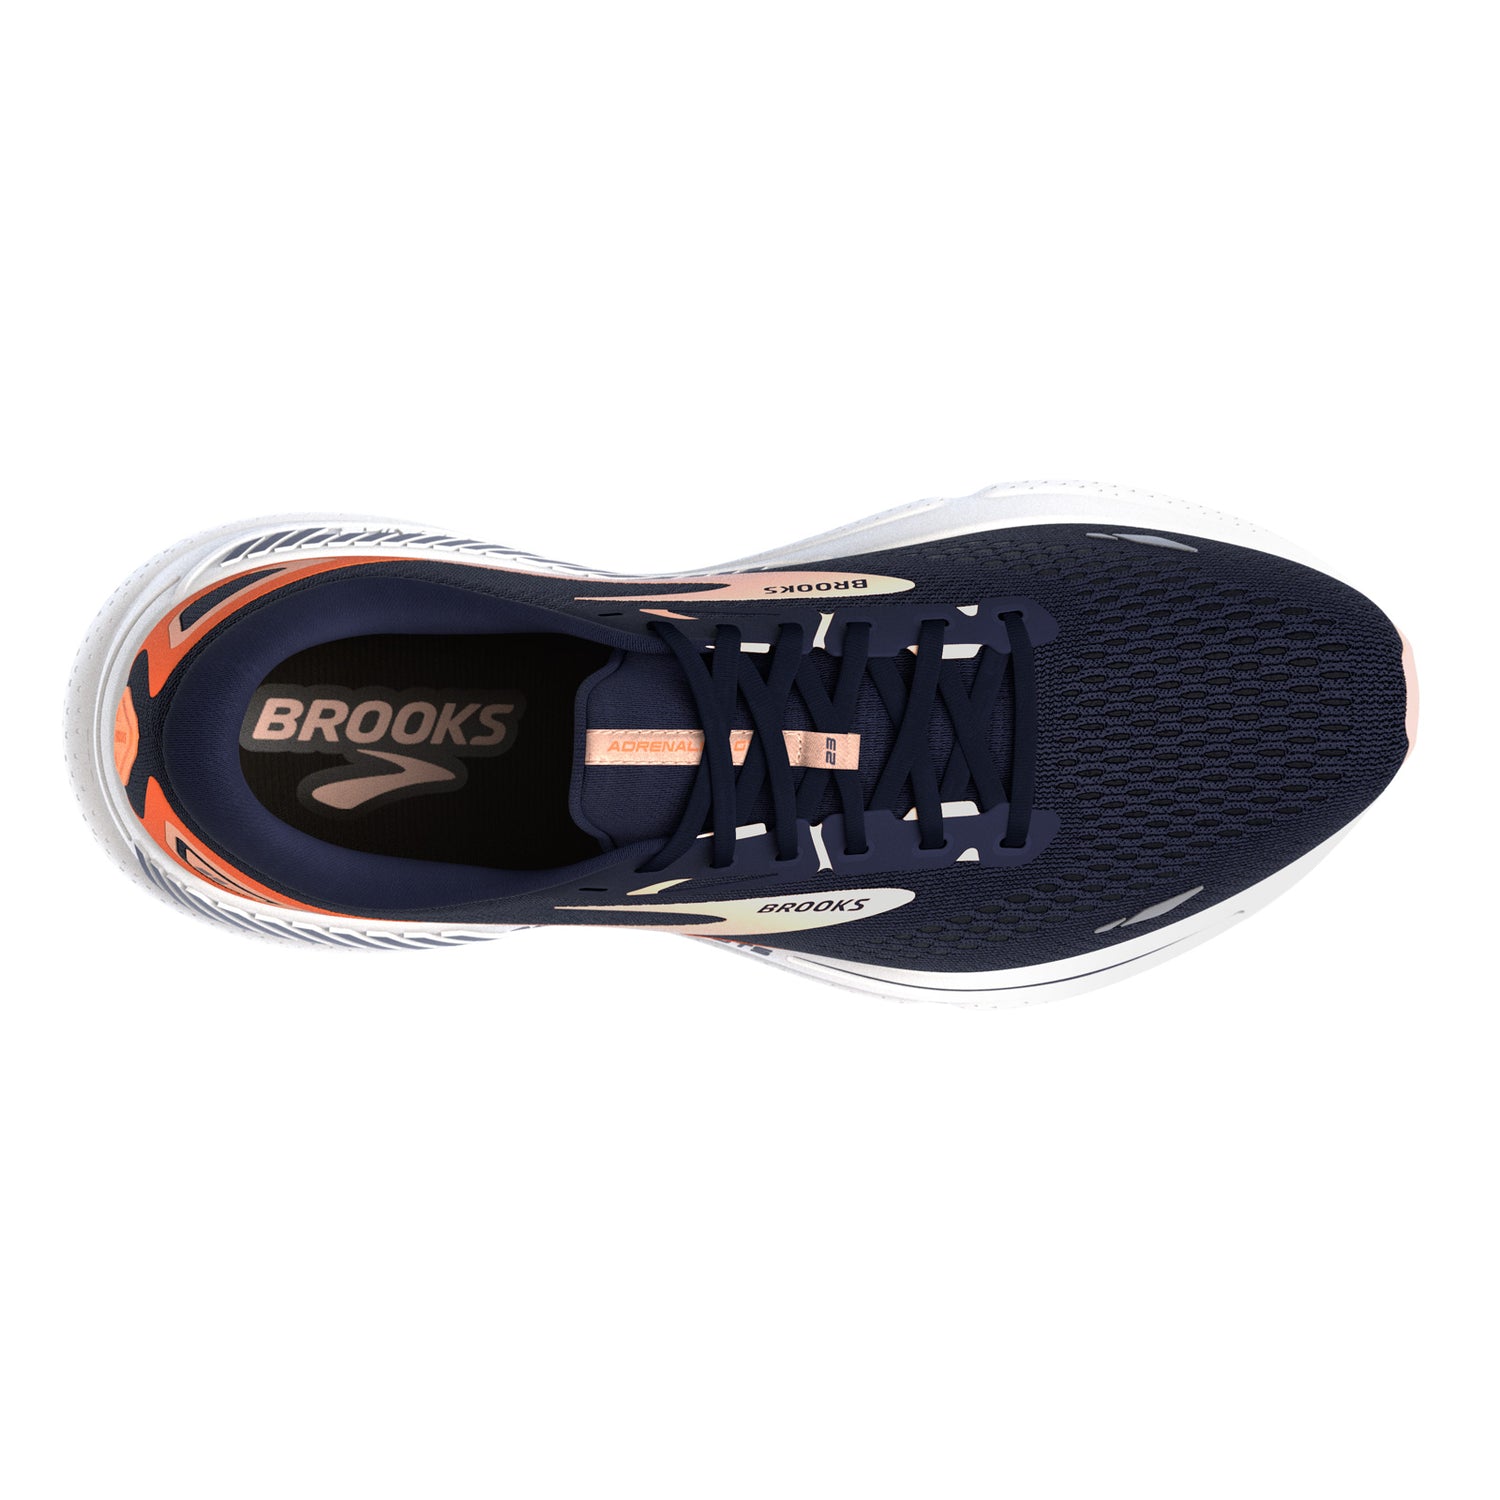 Peltz Shoes  Women's Brooks Adrenaline GTS 23 Running Shoe Navy/Peach 120381 1B 482